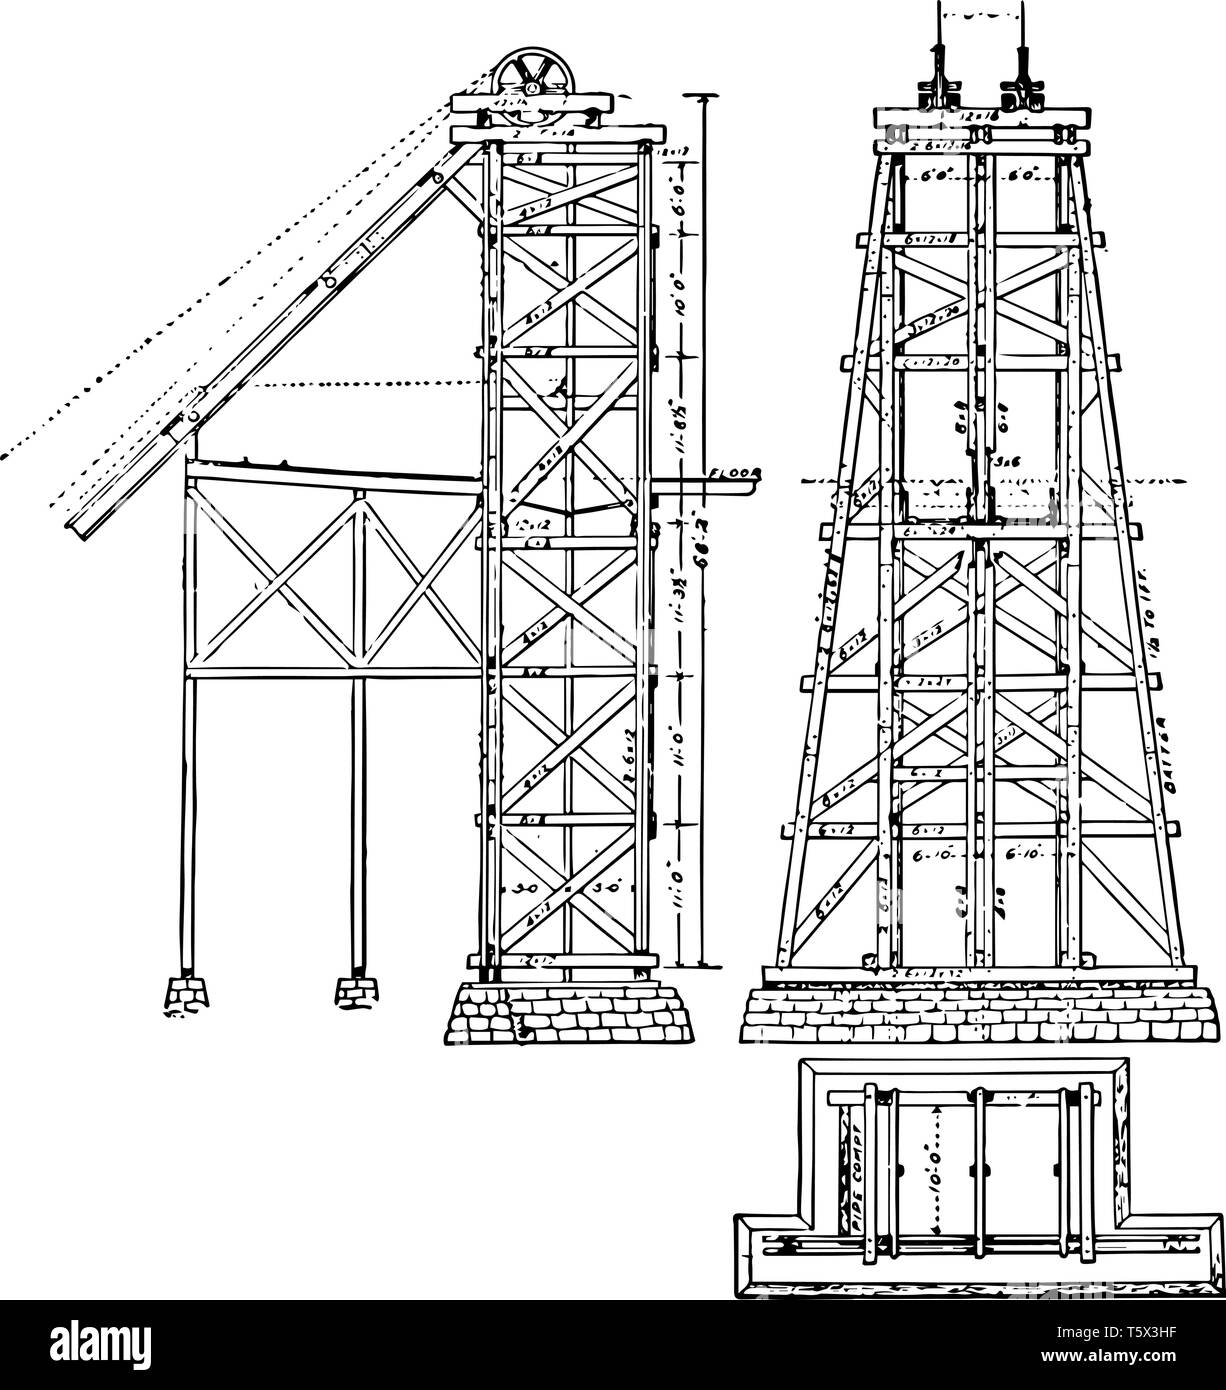 Bergbau Kopfbedeckungen Hoist Tower ist ein Holz oder Stahl Rahmen tragen heben Seile Förderturm hoist frame Grube frame shafthead Frame vintage Zeichnung Stock Vektor